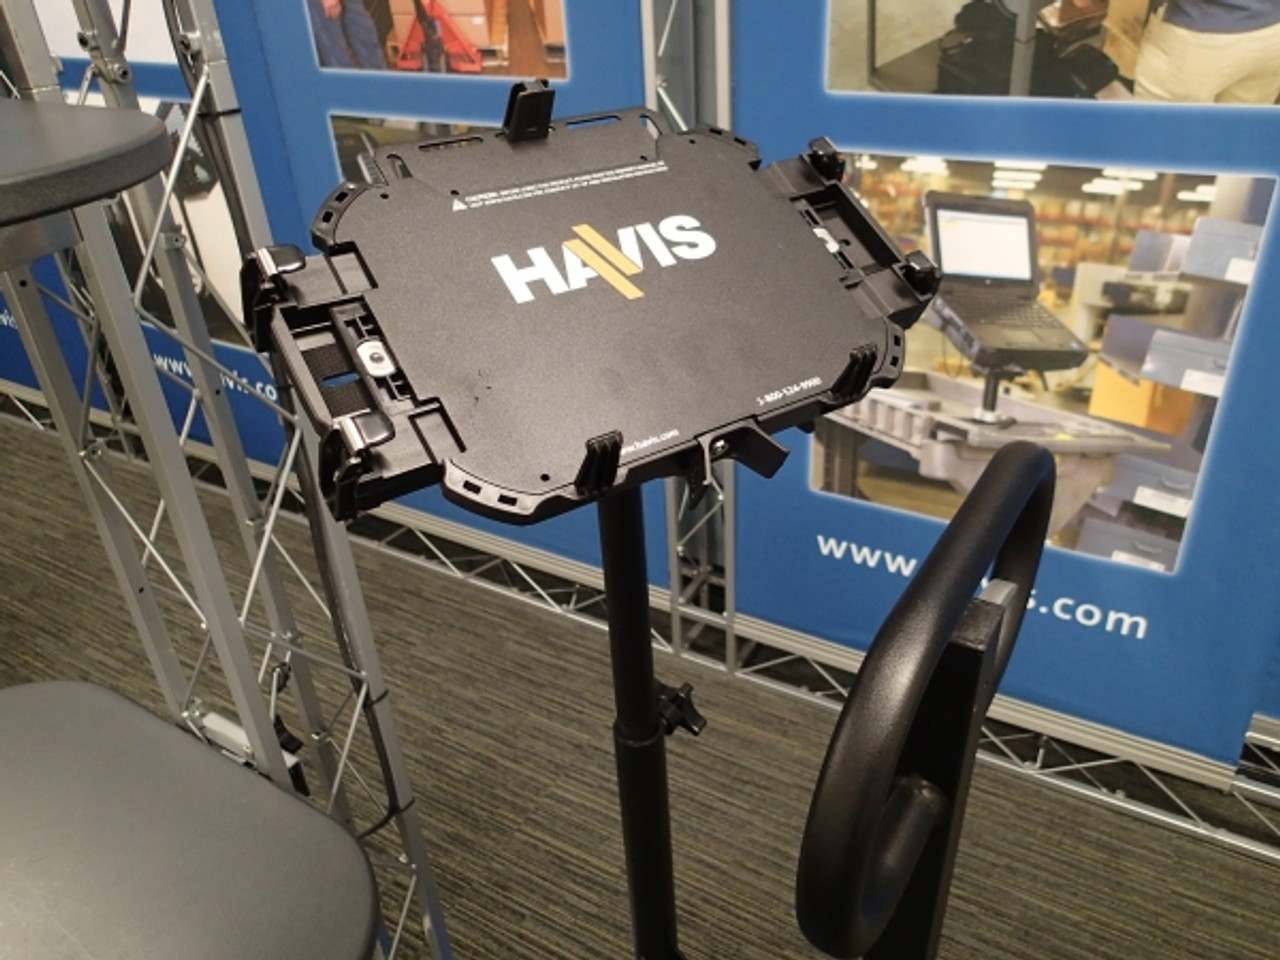 Havis DS-GTC-801 Docking Station for Getac A140 Tablet